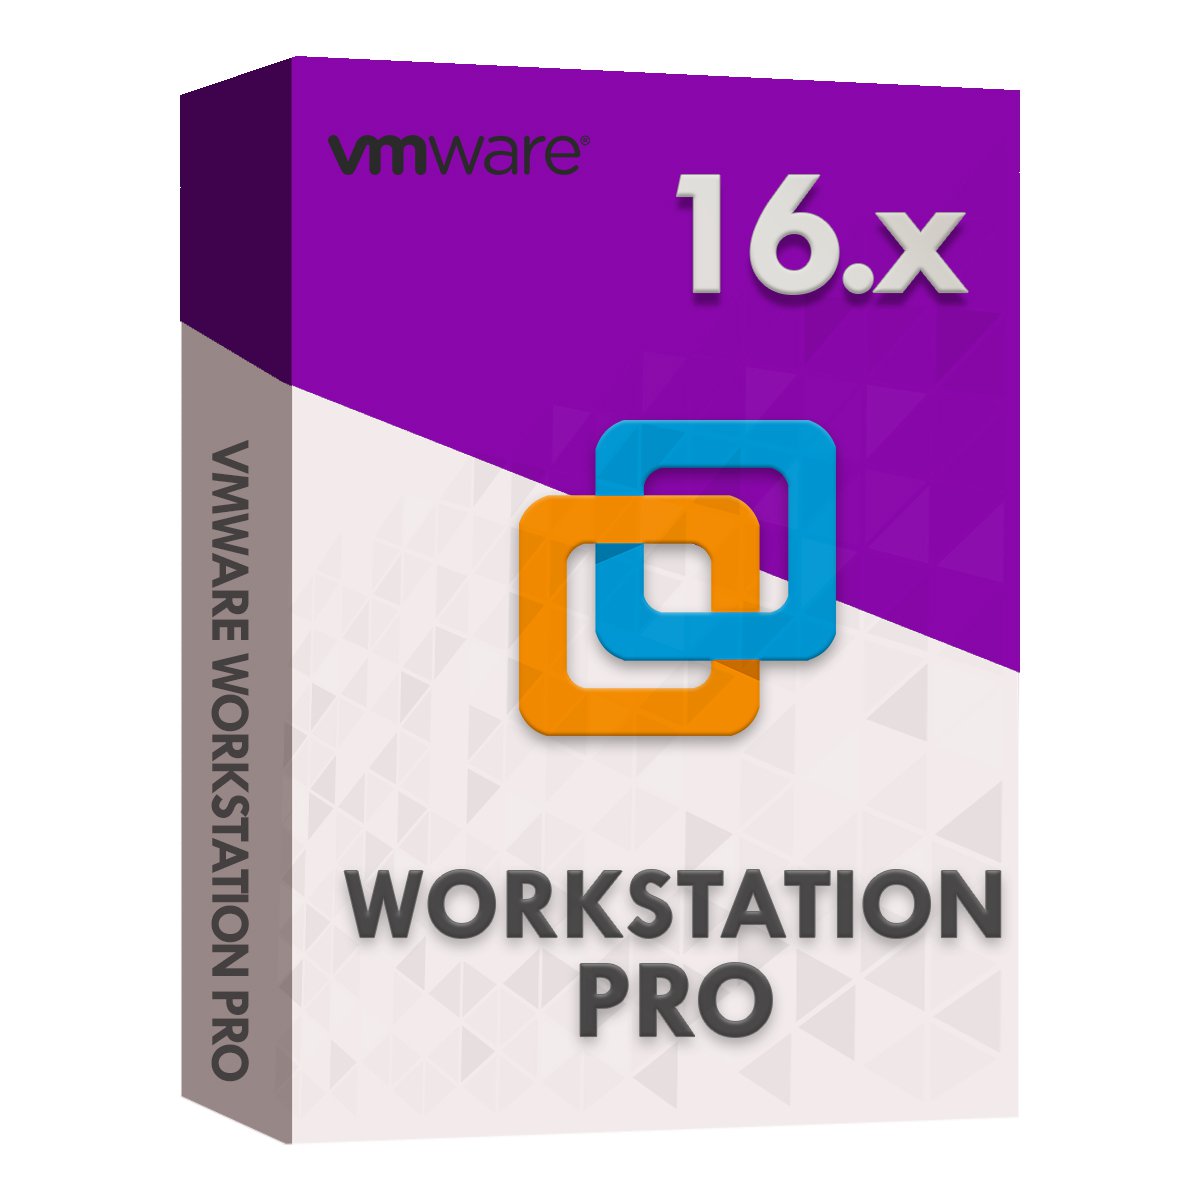 vmware workstation pro 16.2.5 download